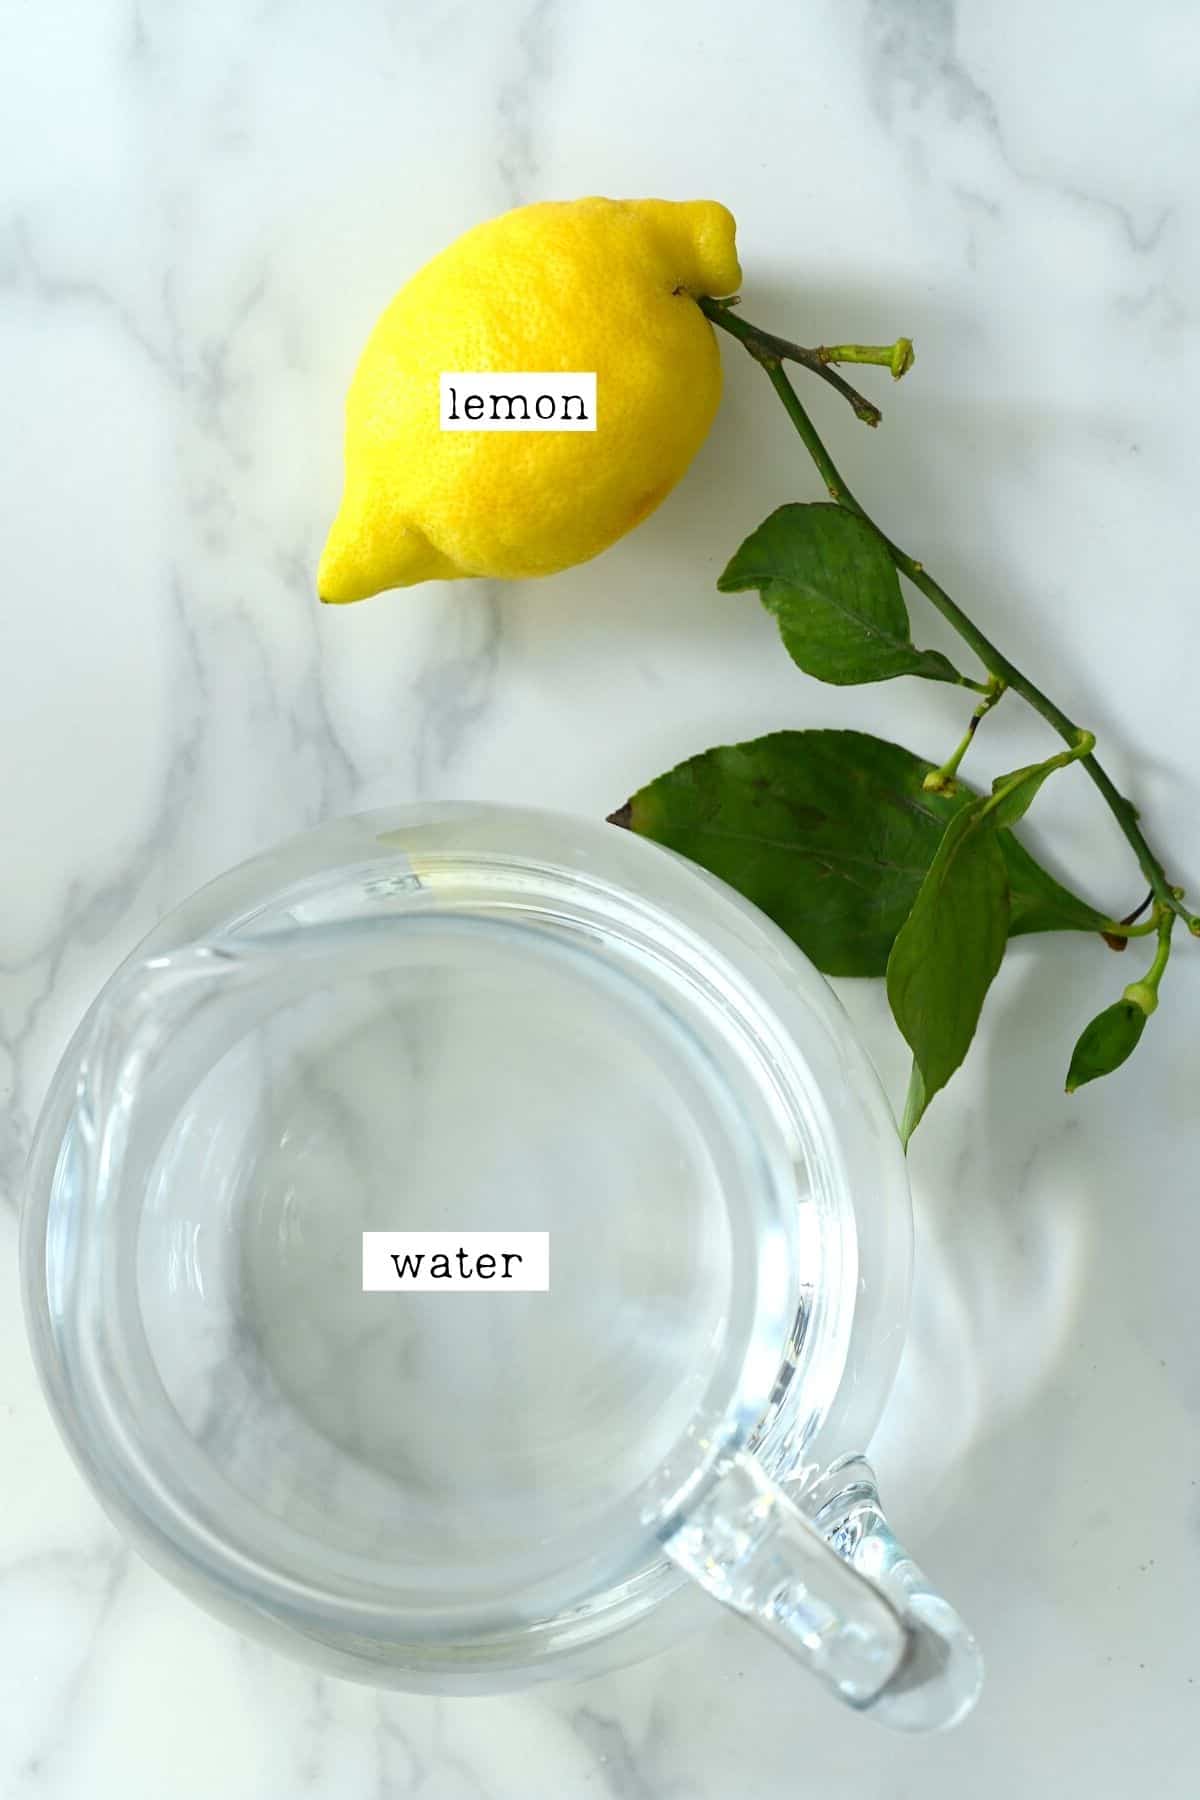 Ingredients to make lemon water